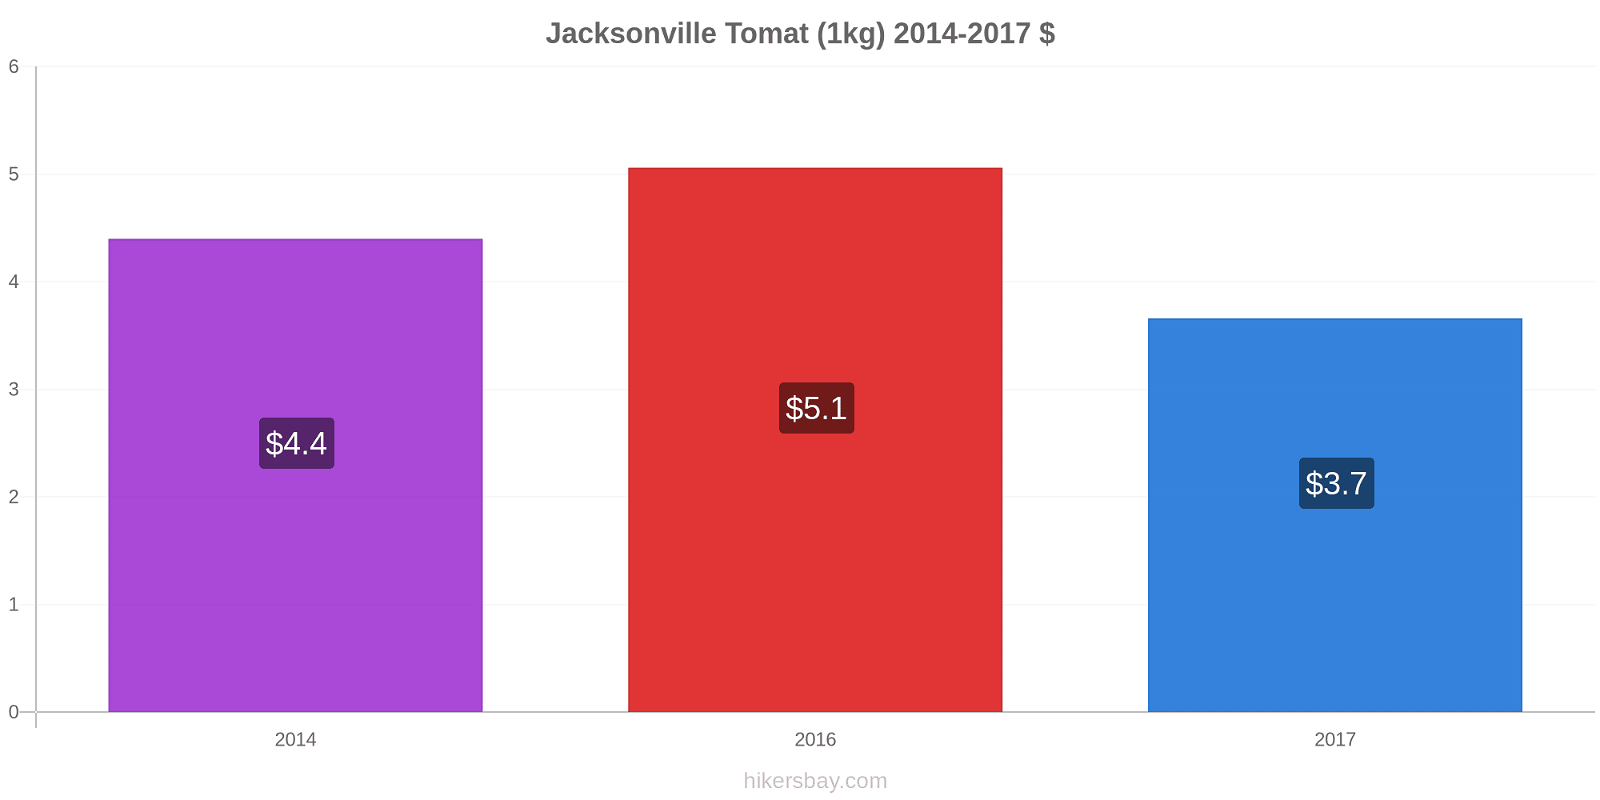 Jacksonville prisendringer Tomat (1kg) hikersbay.com